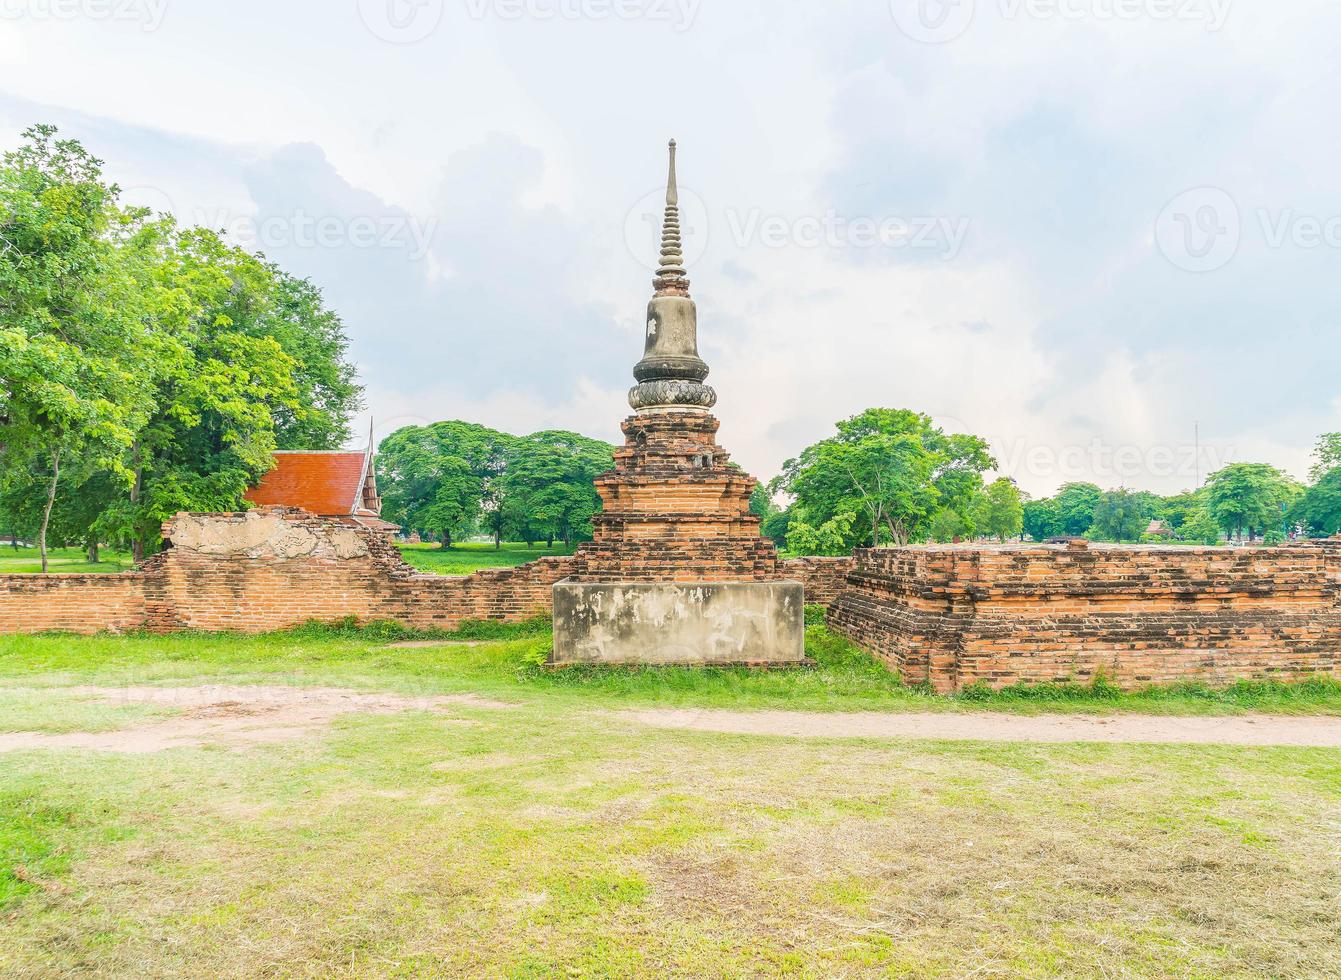 prachtige oude architectuur historisch van ayutthaya in thailand - verhoog de kleurverwerkingsstijl foto